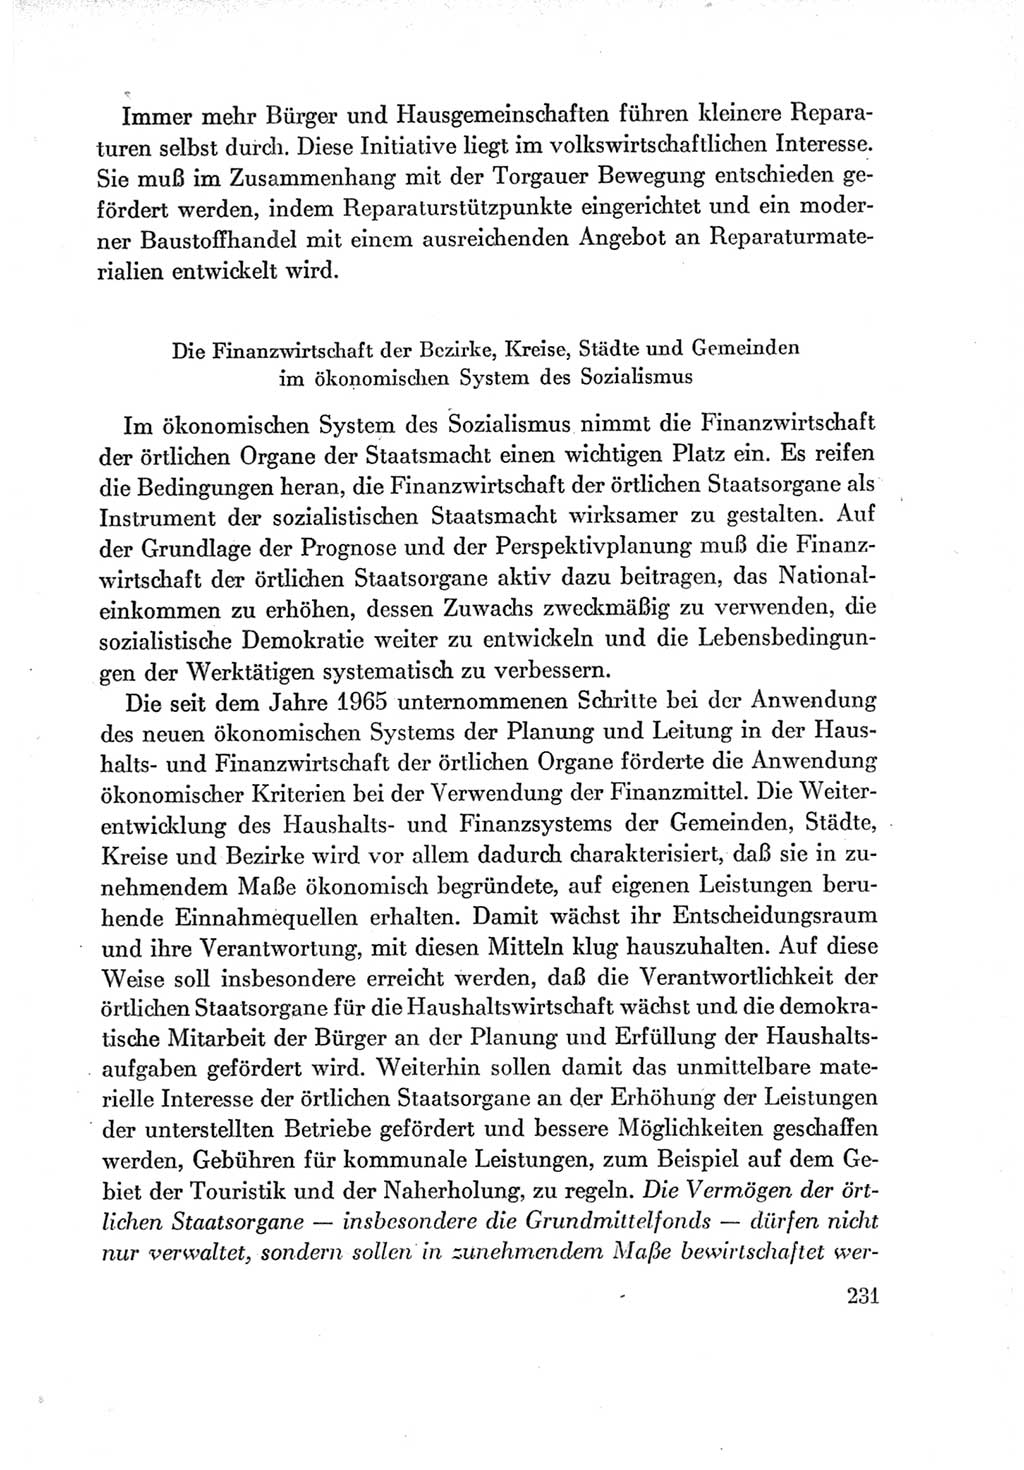 Protokoll der Verhandlungen des Ⅶ. Parteitages der Sozialistischen Einheitspartei Deutschlands (SED) [Deutsche Demokratische Republik (DDR)] 1967, Band Ⅰ, Seite 231 (Prot. Verh. Ⅶ. PT SED DDR 1967, Bd. Ⅰ, S. 231)